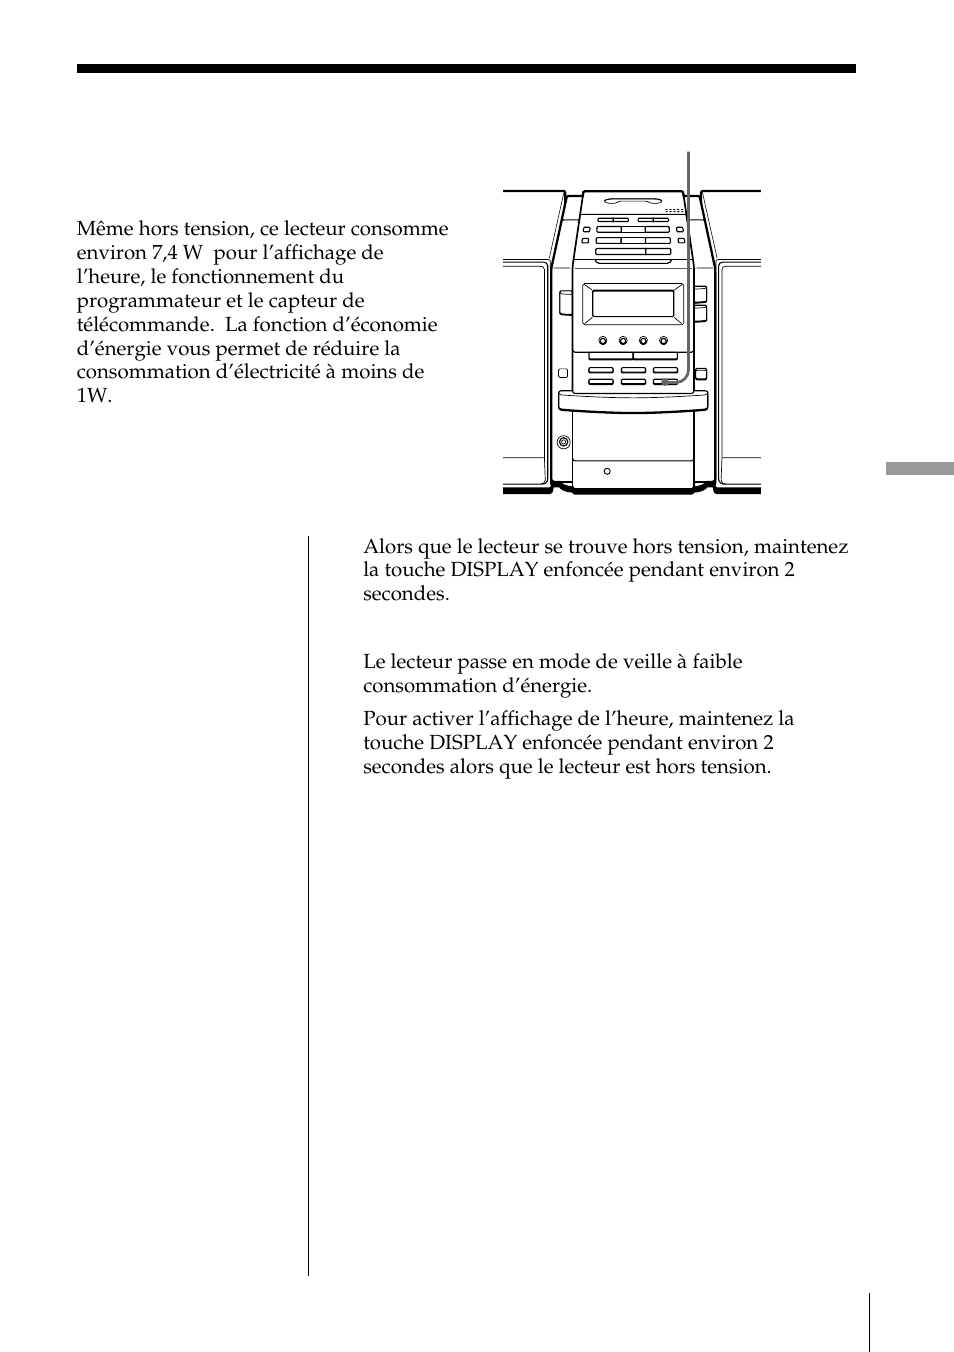 Mode d’économie d’énergie | Sony PMC-DR45 Manuel d'utilisation | Page 37 / 48